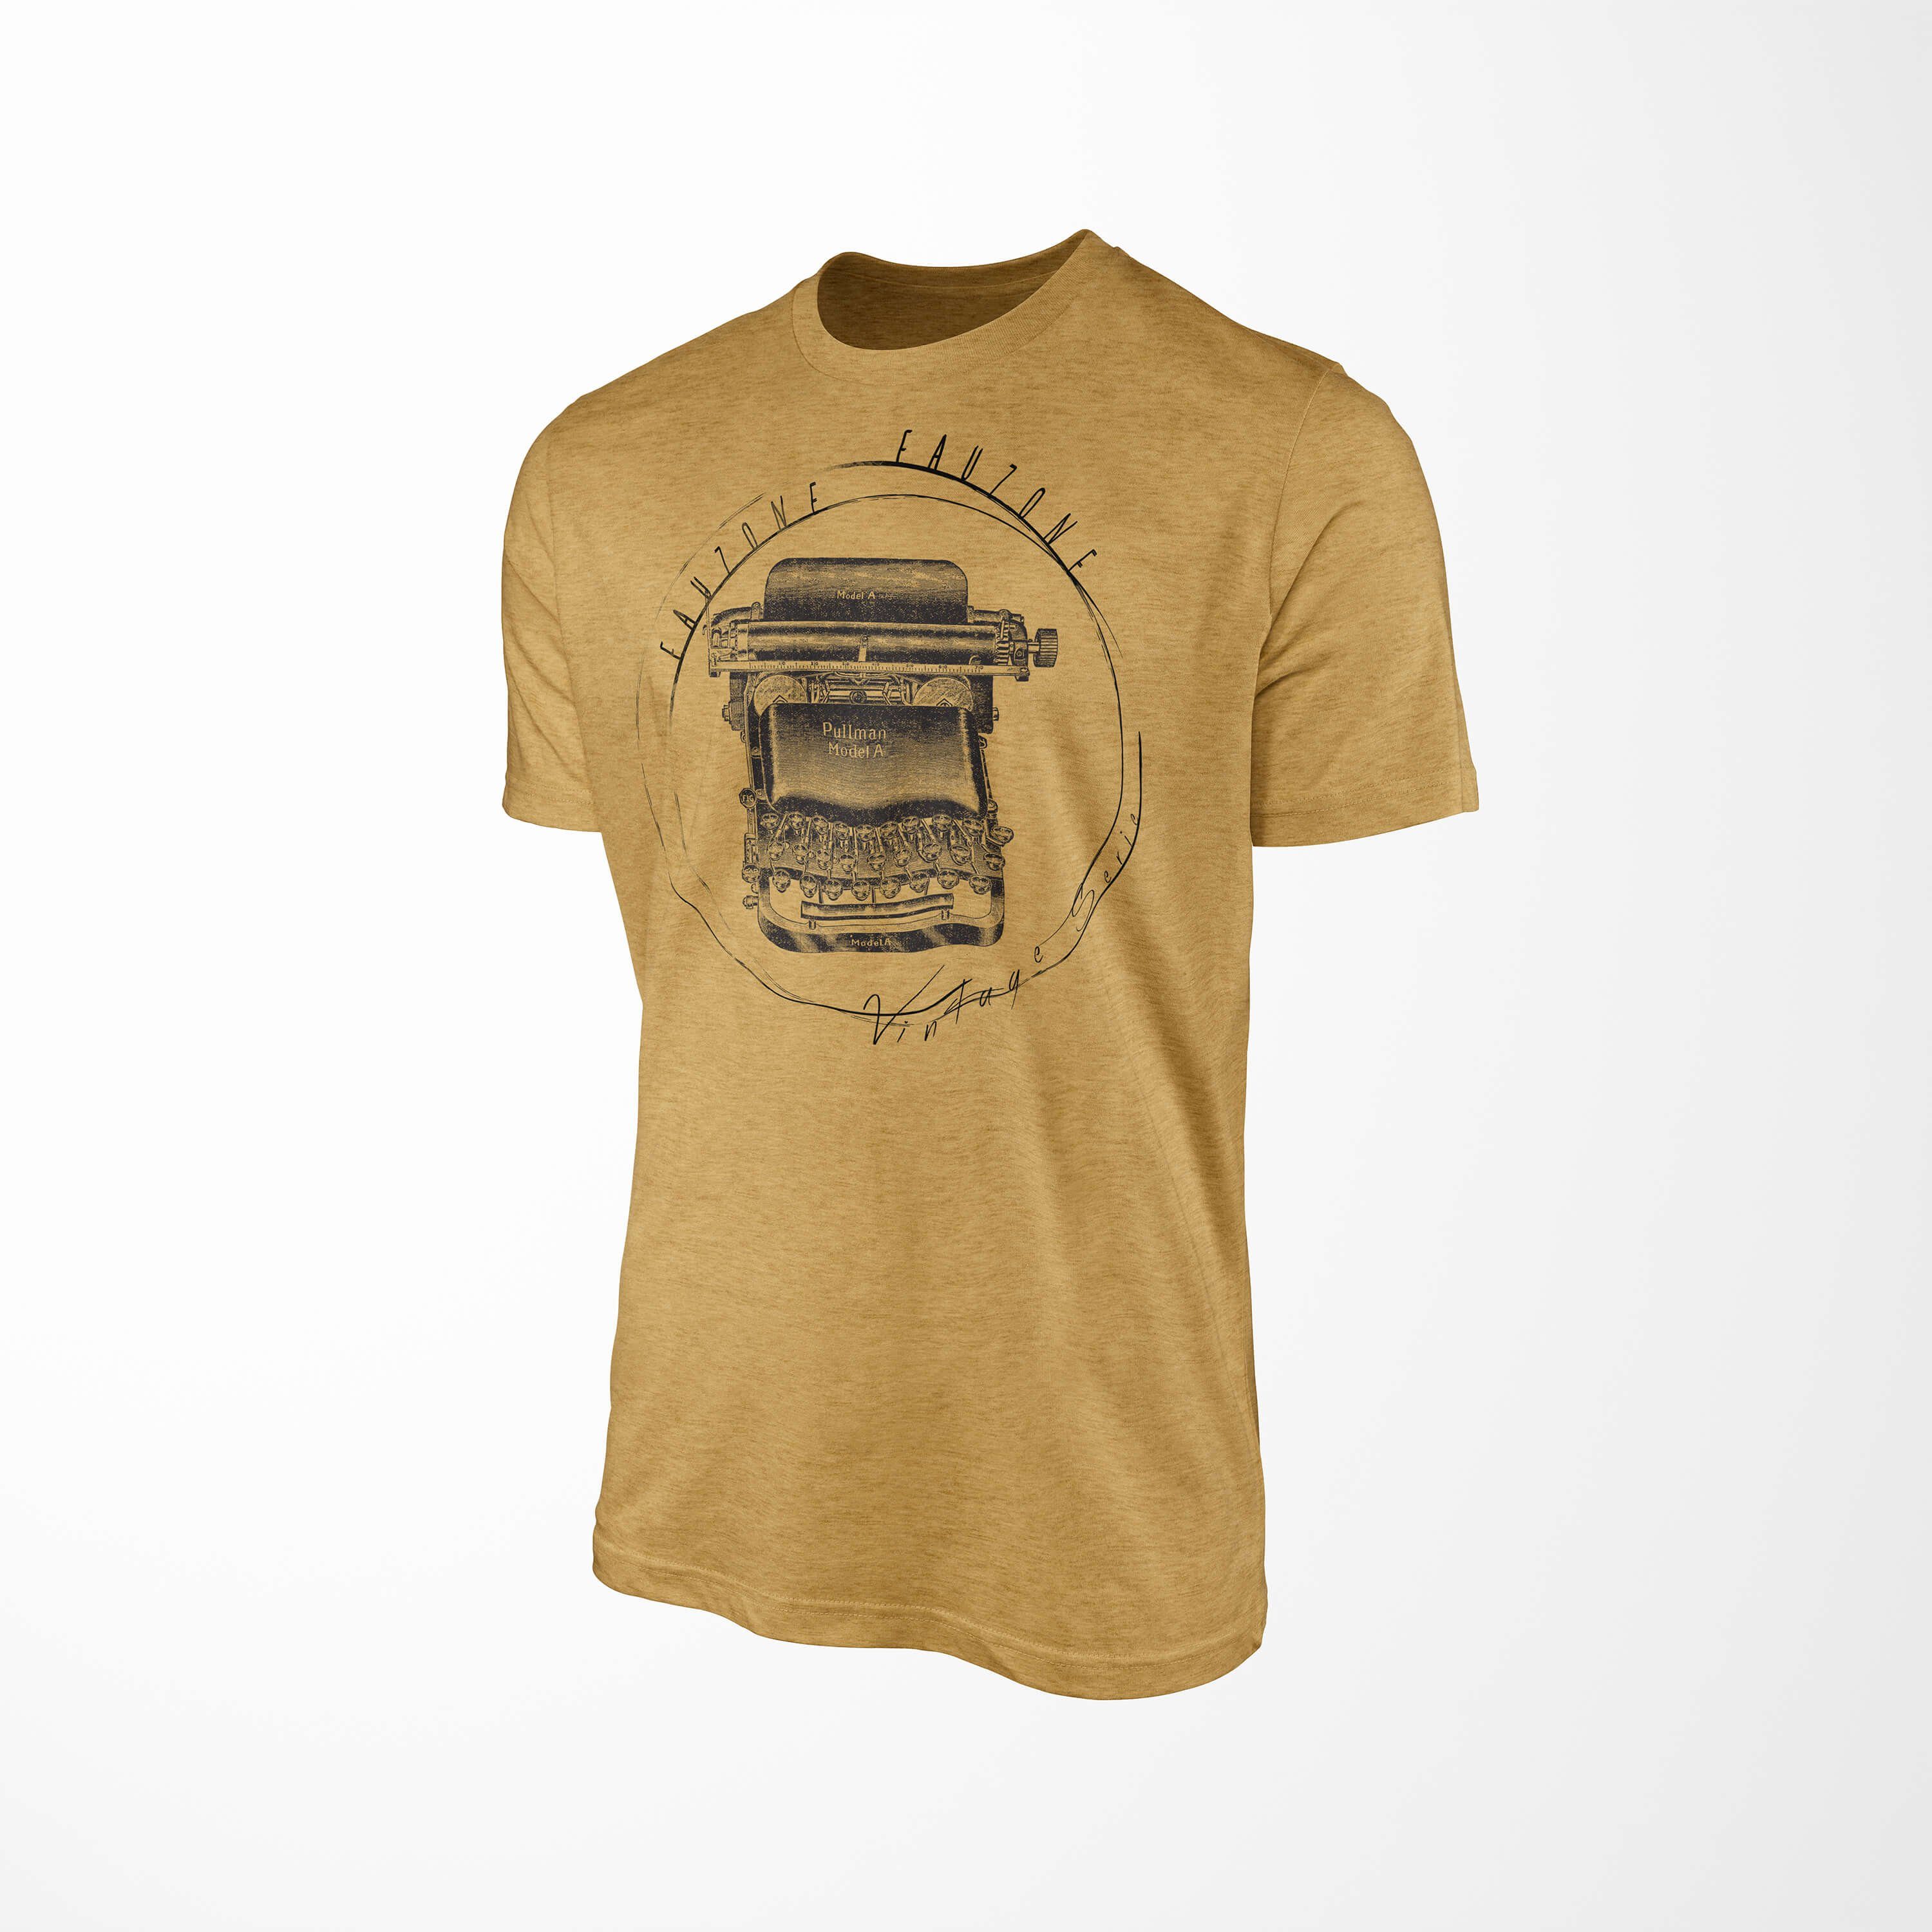 Antique T-Shirt Herren Gold Schreibmaschine Art Vintage T-Shirt Sinus